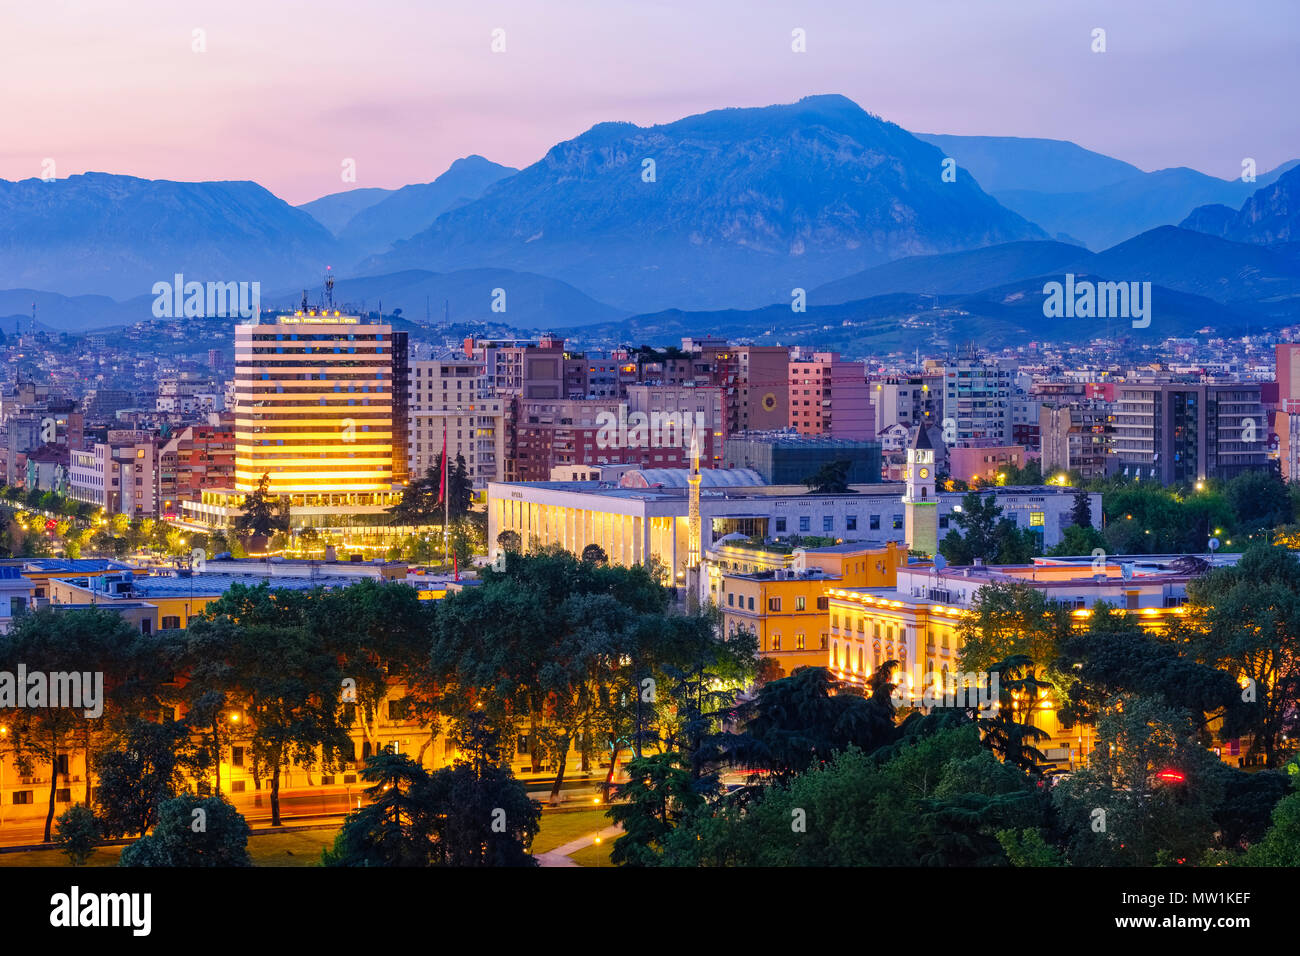 Vue de la ville, centre-ville avec des palais de la culture, la Mosquée Ethem-Bey et tour de l'horloge, les montagnes à l'arrière, crépuscule, Tirana Banque D'Images